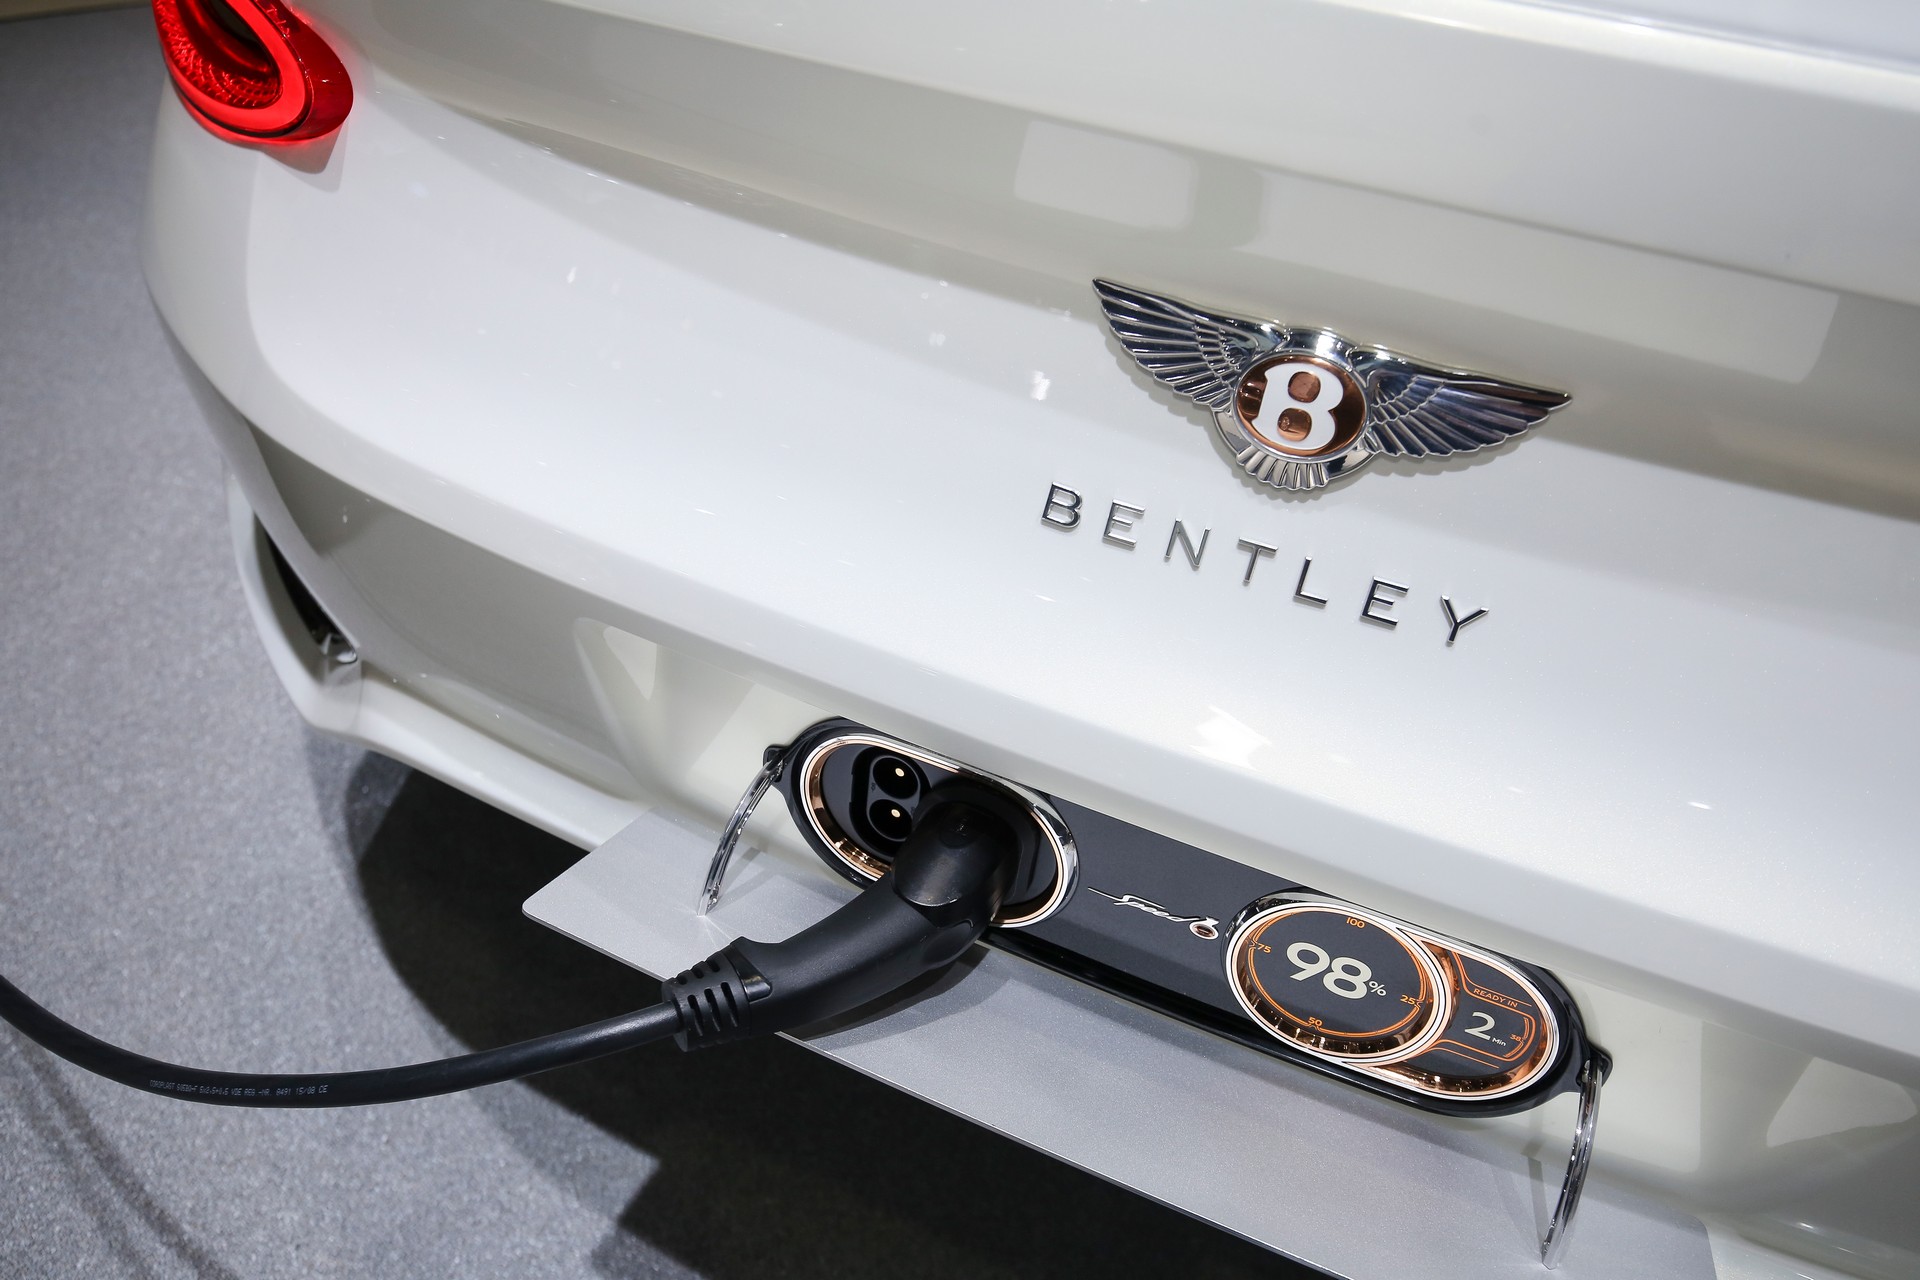 Még idén elkezdi tesztelni a Bentley az első elektromos autóját